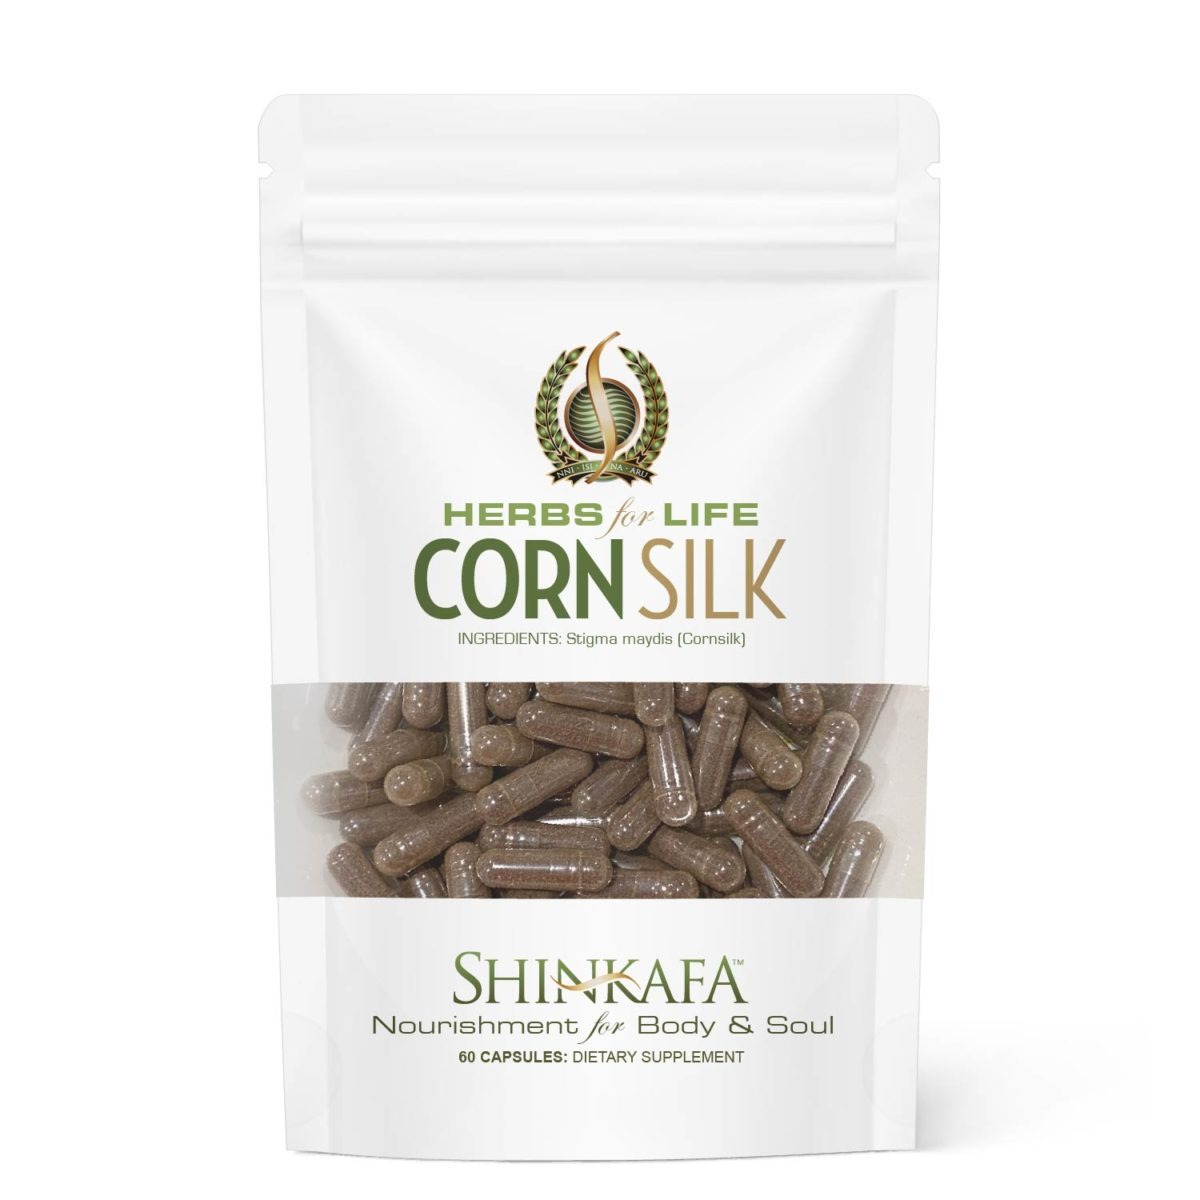 Corn Silk Herbs for Life by Shinkafa - Front